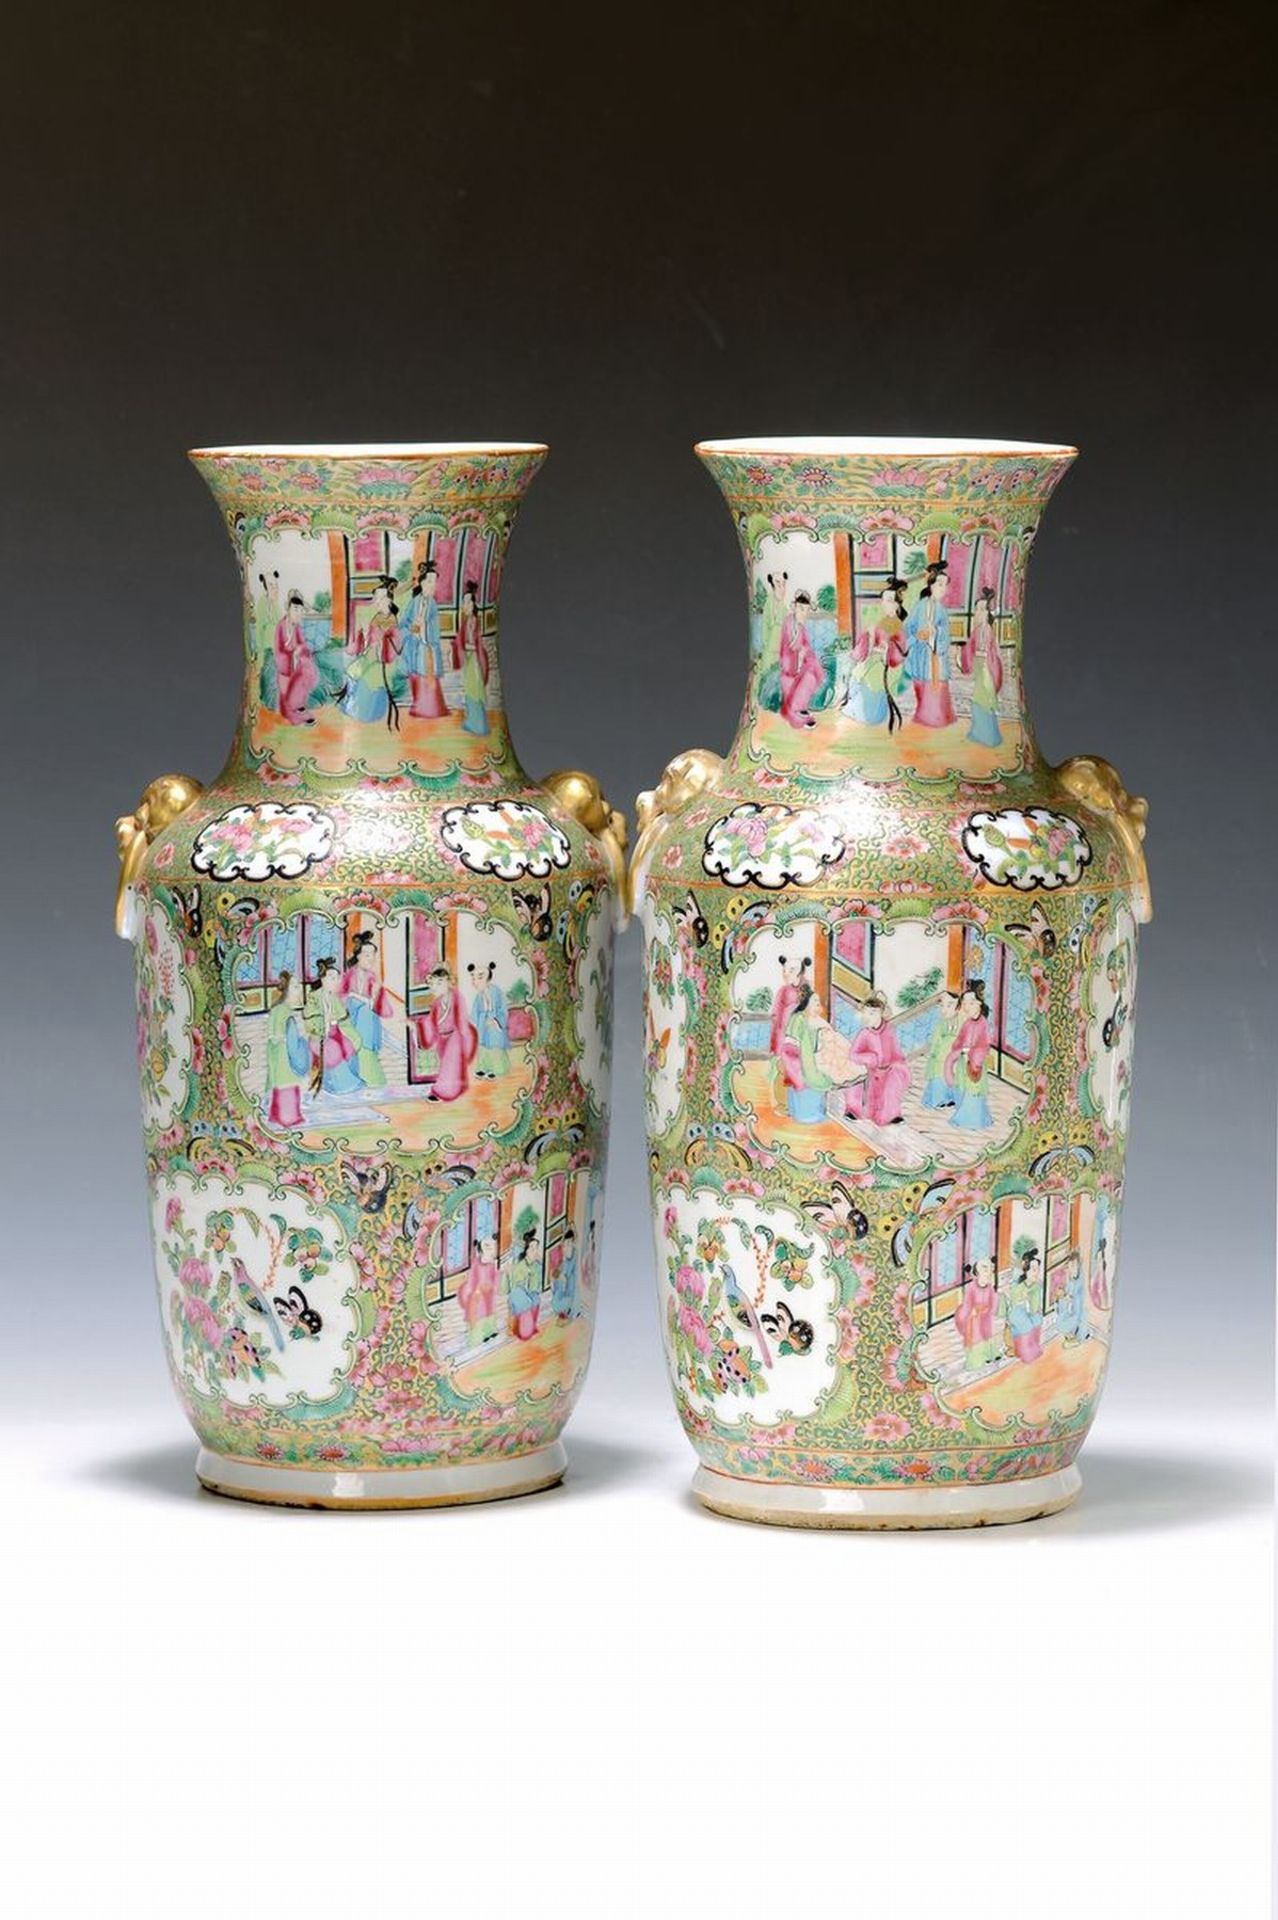 Paar Vasen, China, um 1880-90,  Porzellan, reich bunt